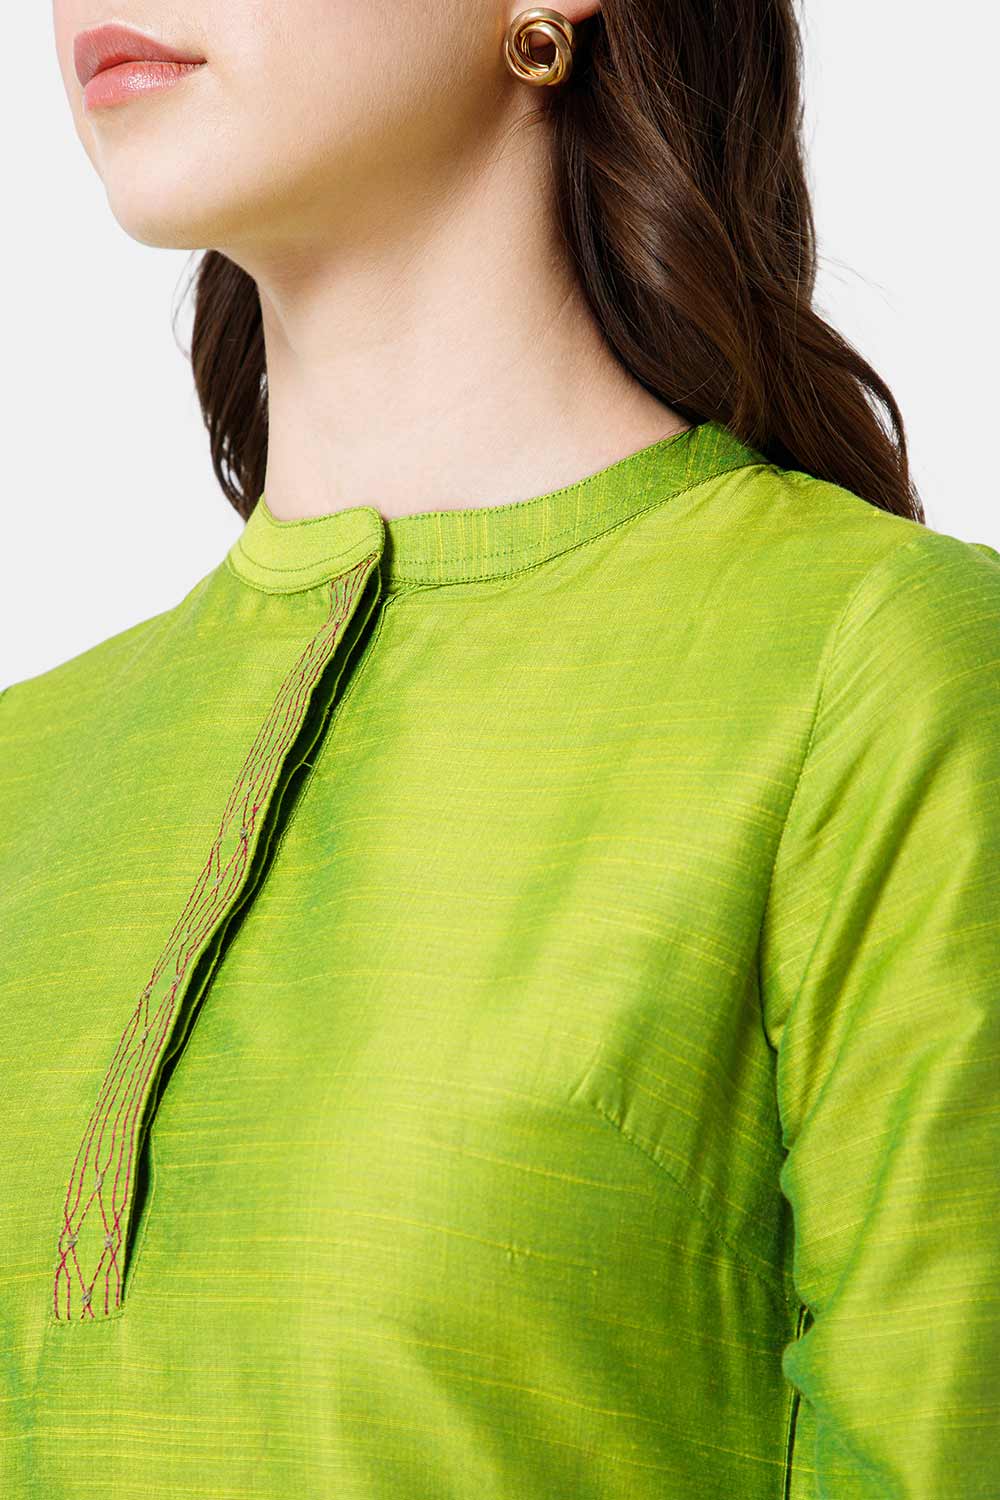 Mythri Women's Ethnic Wear Mandarin collar 3/4 sleeve straight cut Kurti - Green - KU43